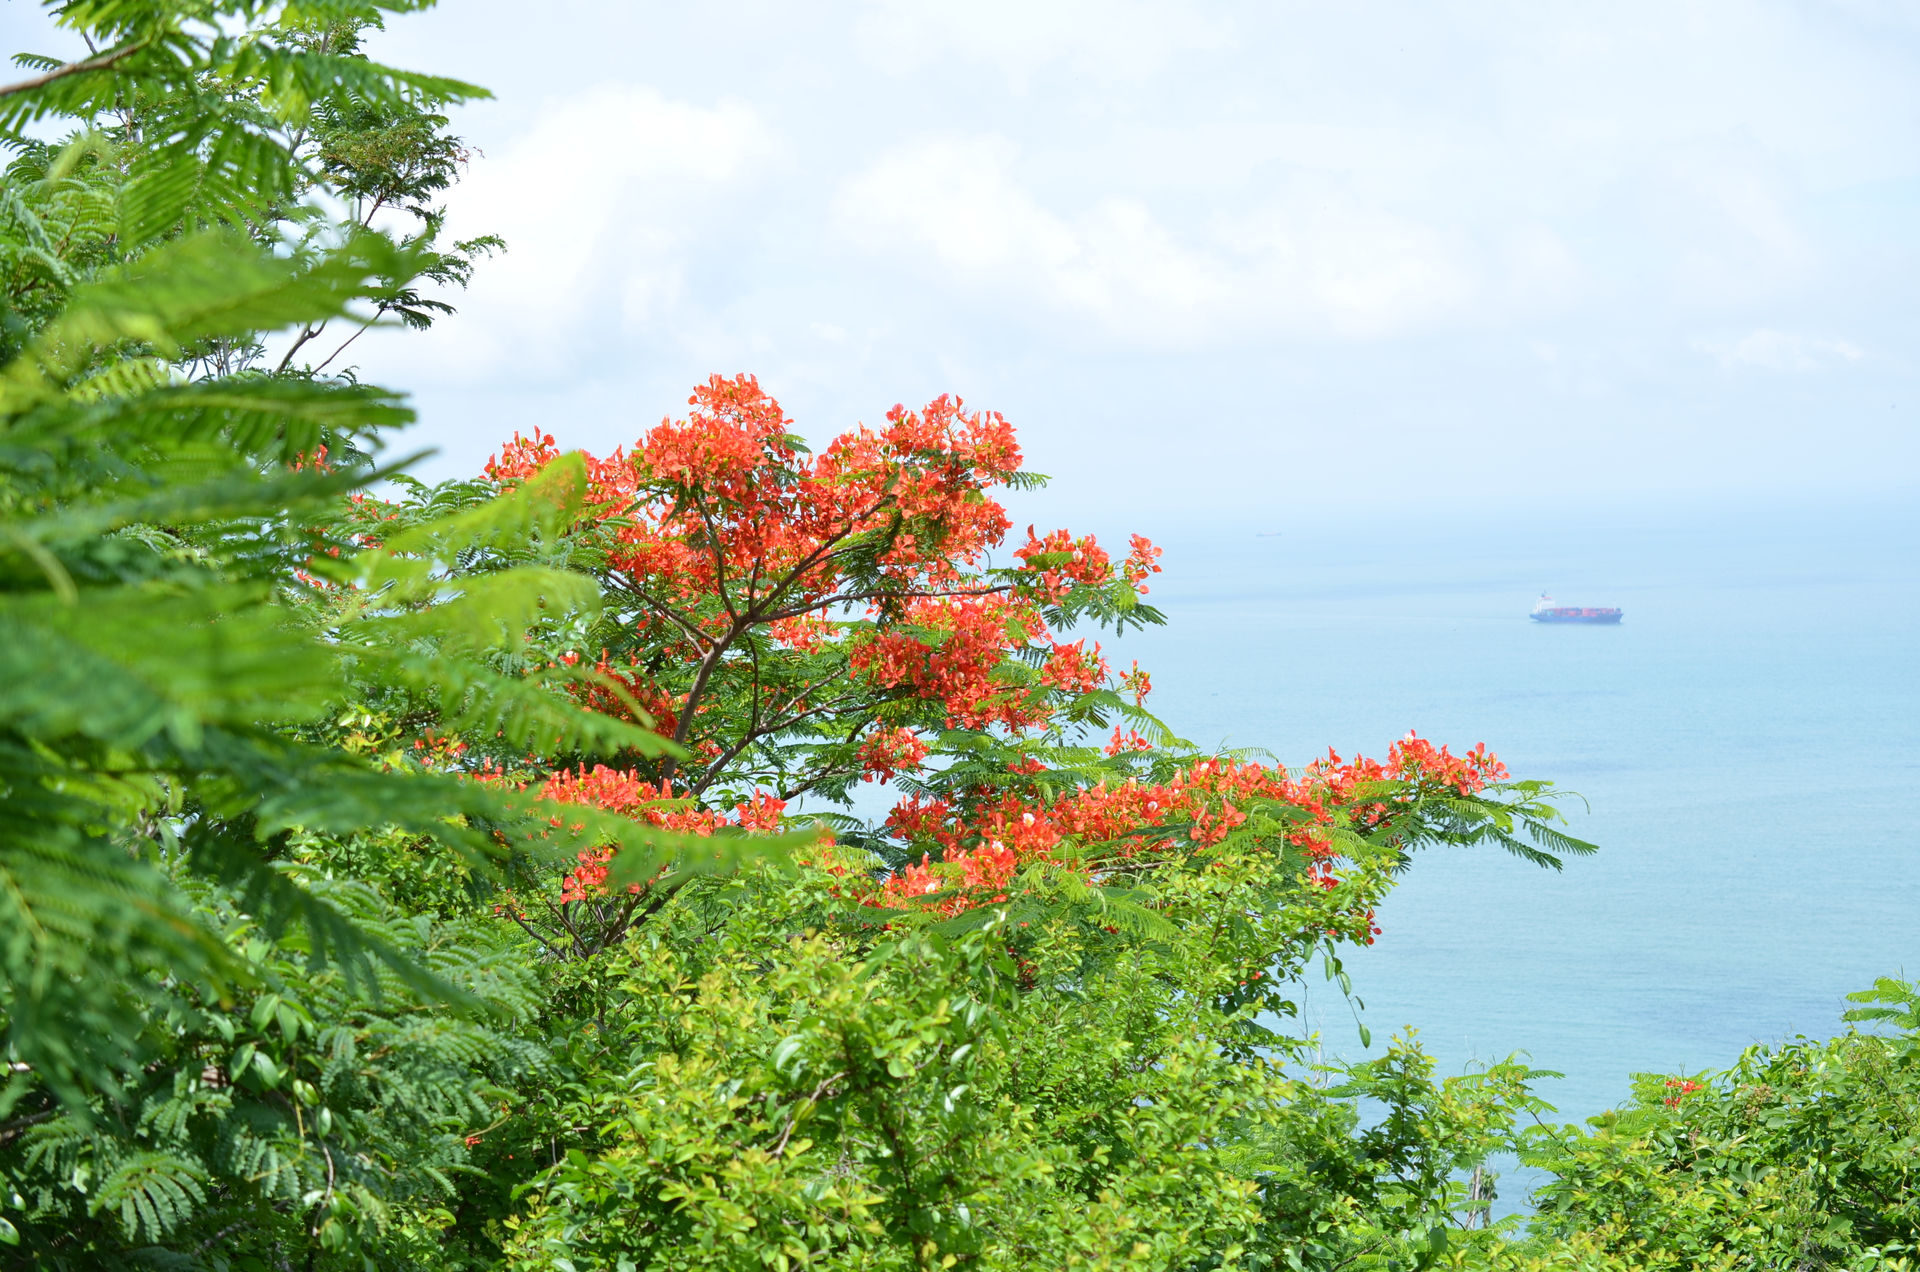  Một góc biển Vũng Tàu vào mùa hè nhìn từ ngọn Hải Đăng.